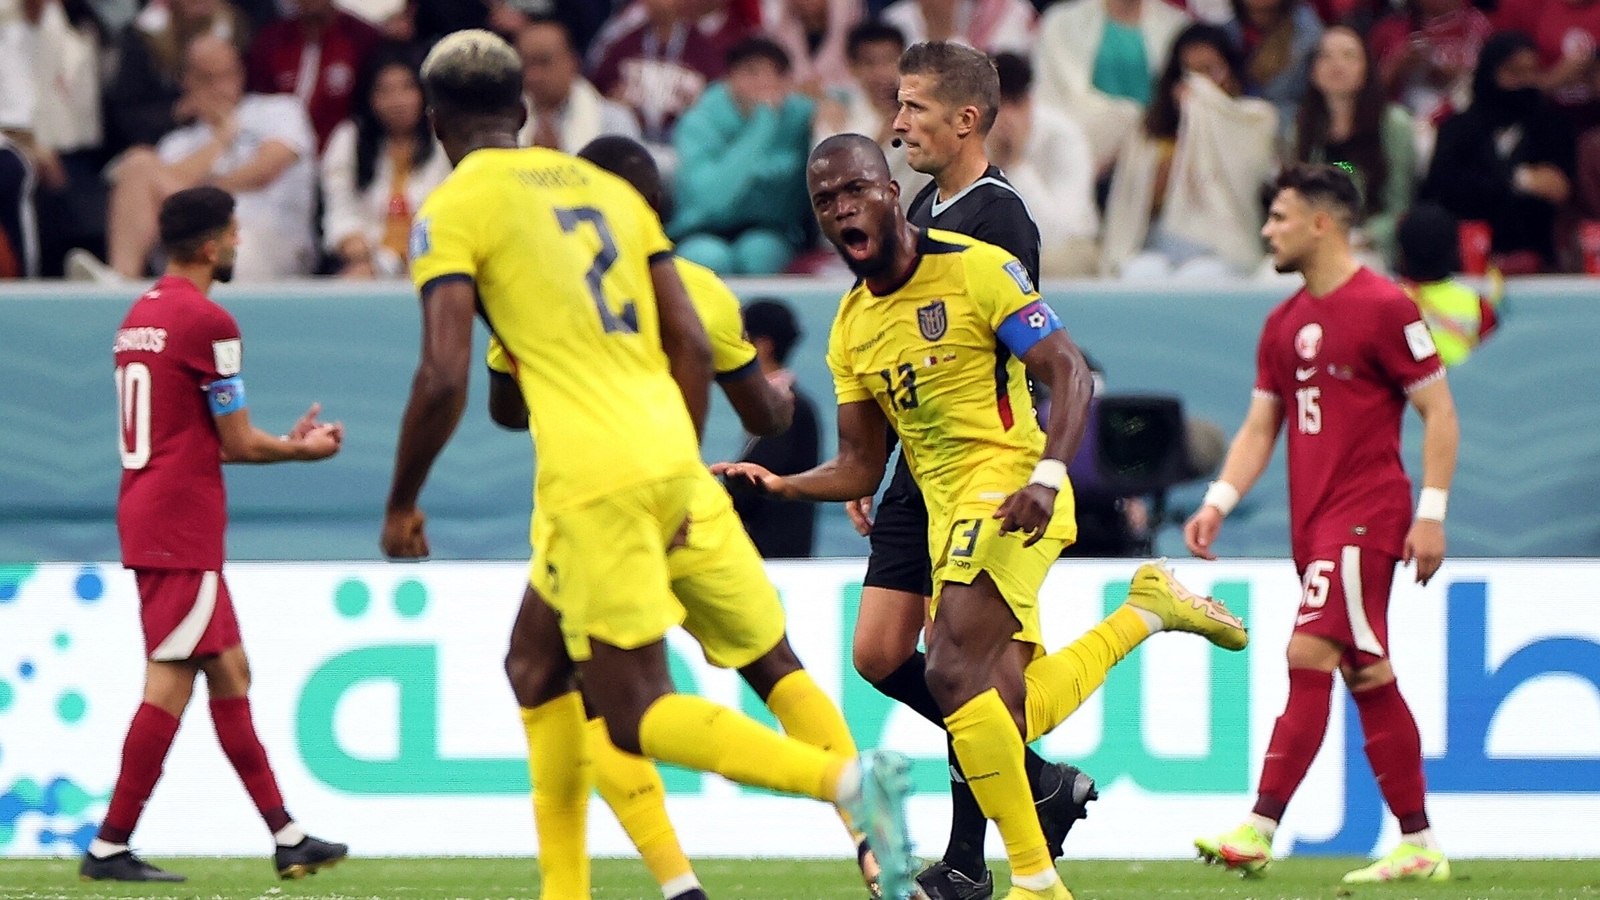 Valencia’s double seals Ecuador’s World Cup opening act